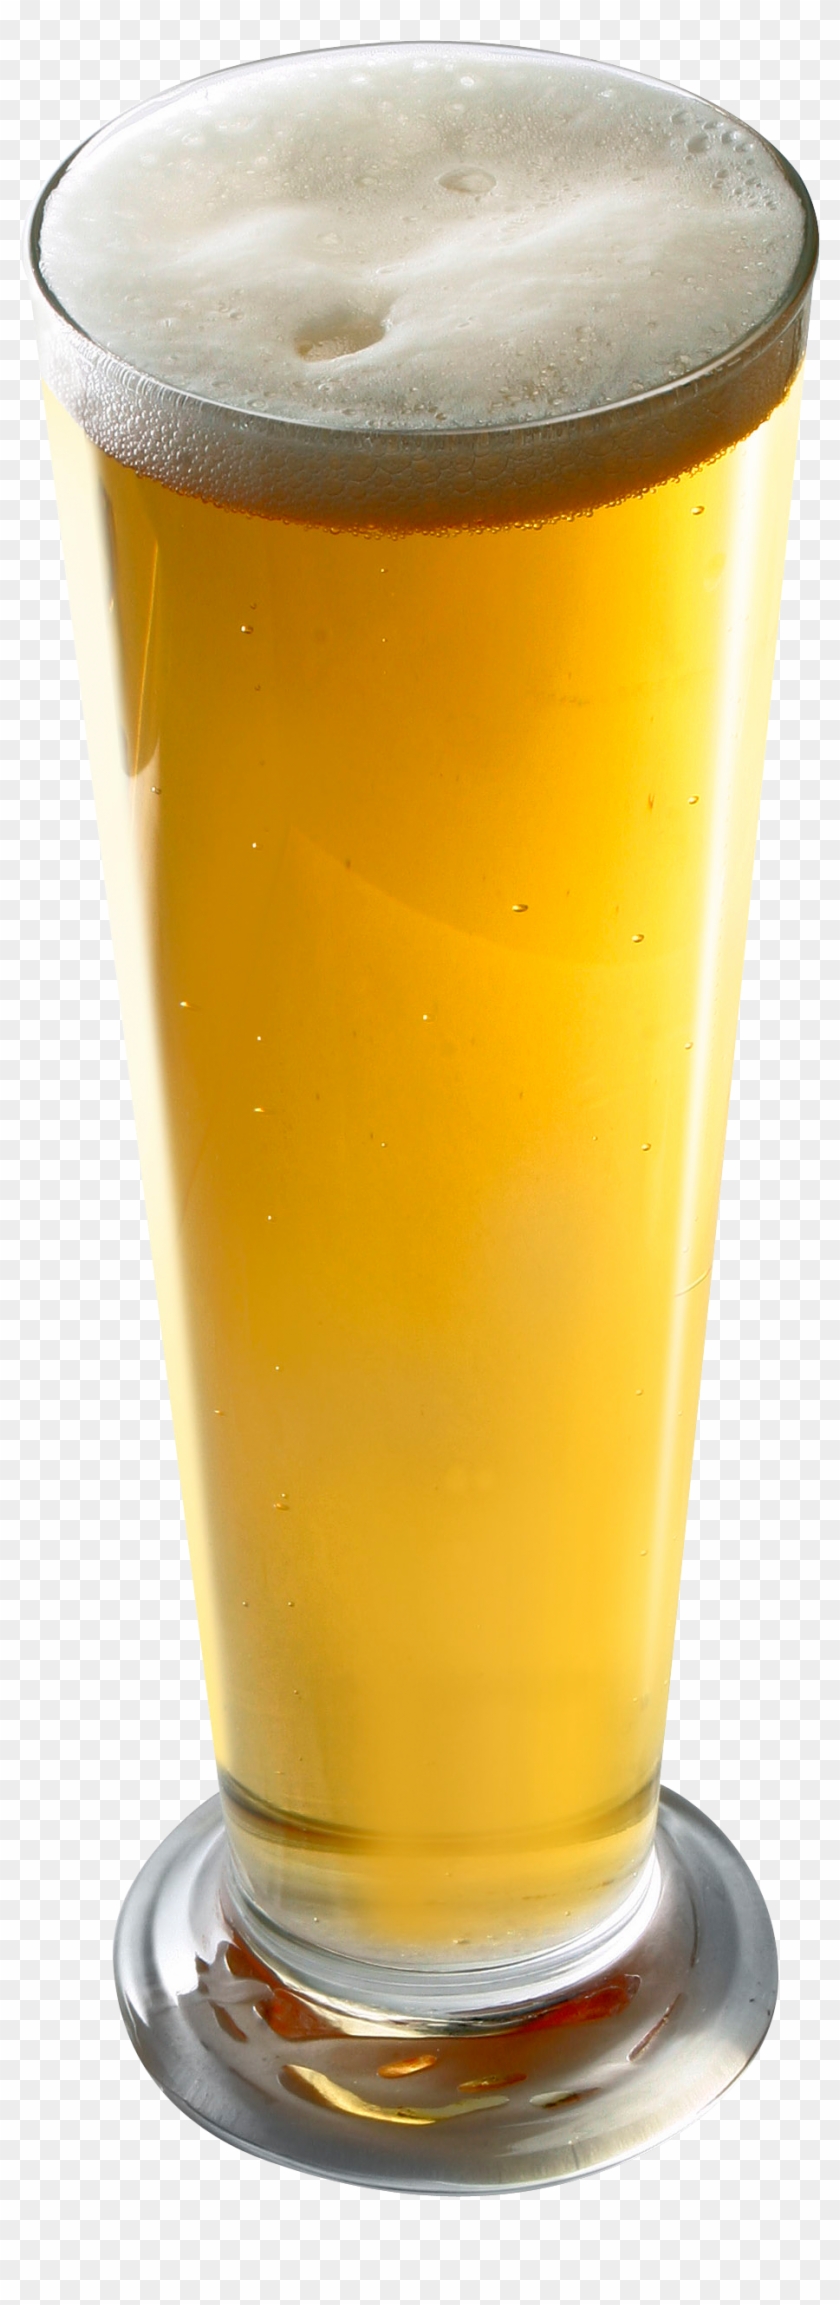 Glass Of Beer Fourteen - Beer #893552